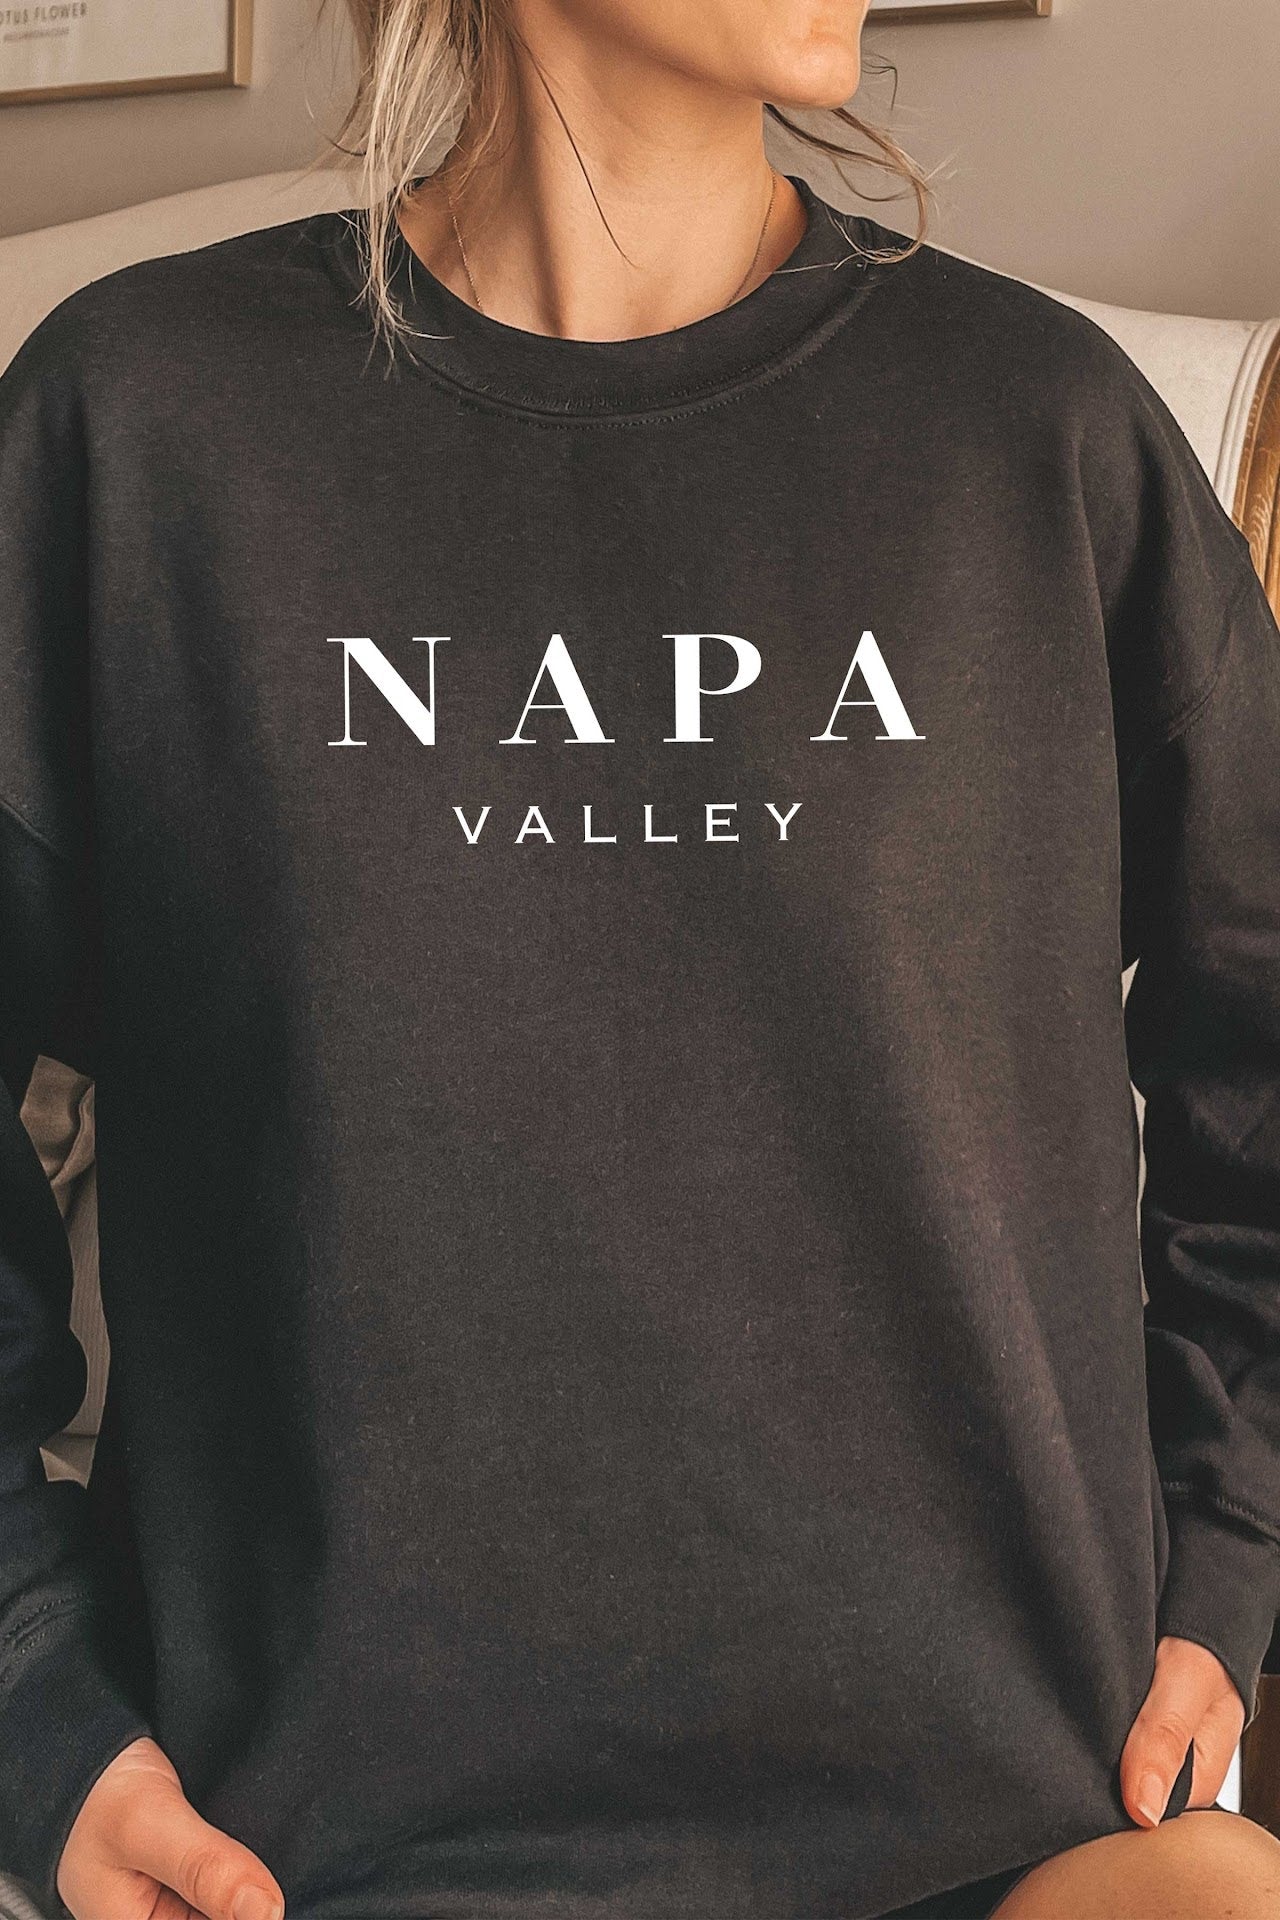 The Napa Valley Crewneck Sweatshirt